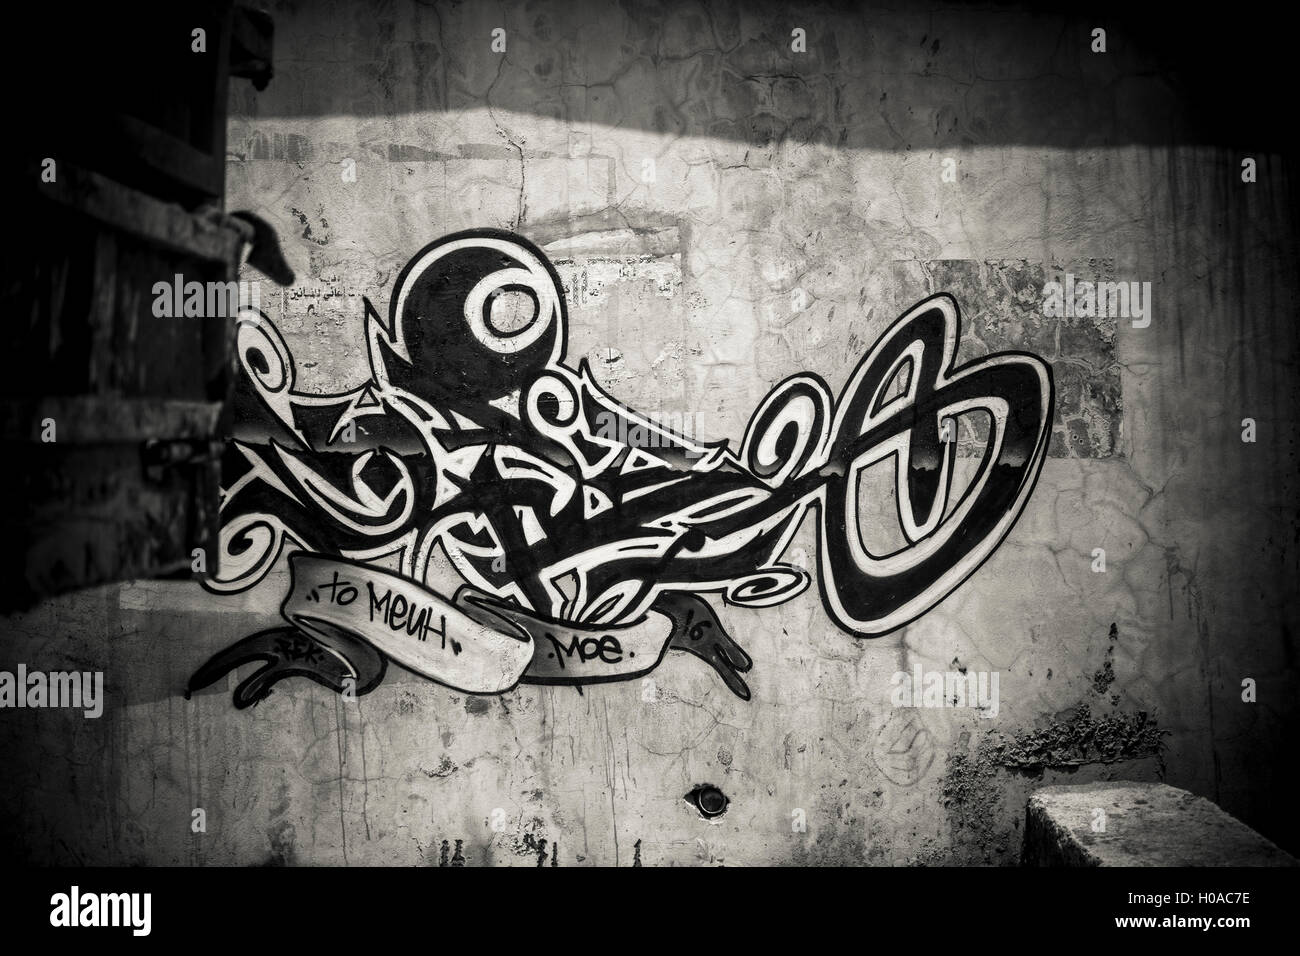 Les graffitis à Beyrouth - 10/06/2016 - Liban / Beyrouth - Geitawi, Beyrouth, juin 2016. Graffiti par Moe. (Sur le mur en hommage à meuh.) - Bilal Tarabey / Le Pictorium Banque D'Images